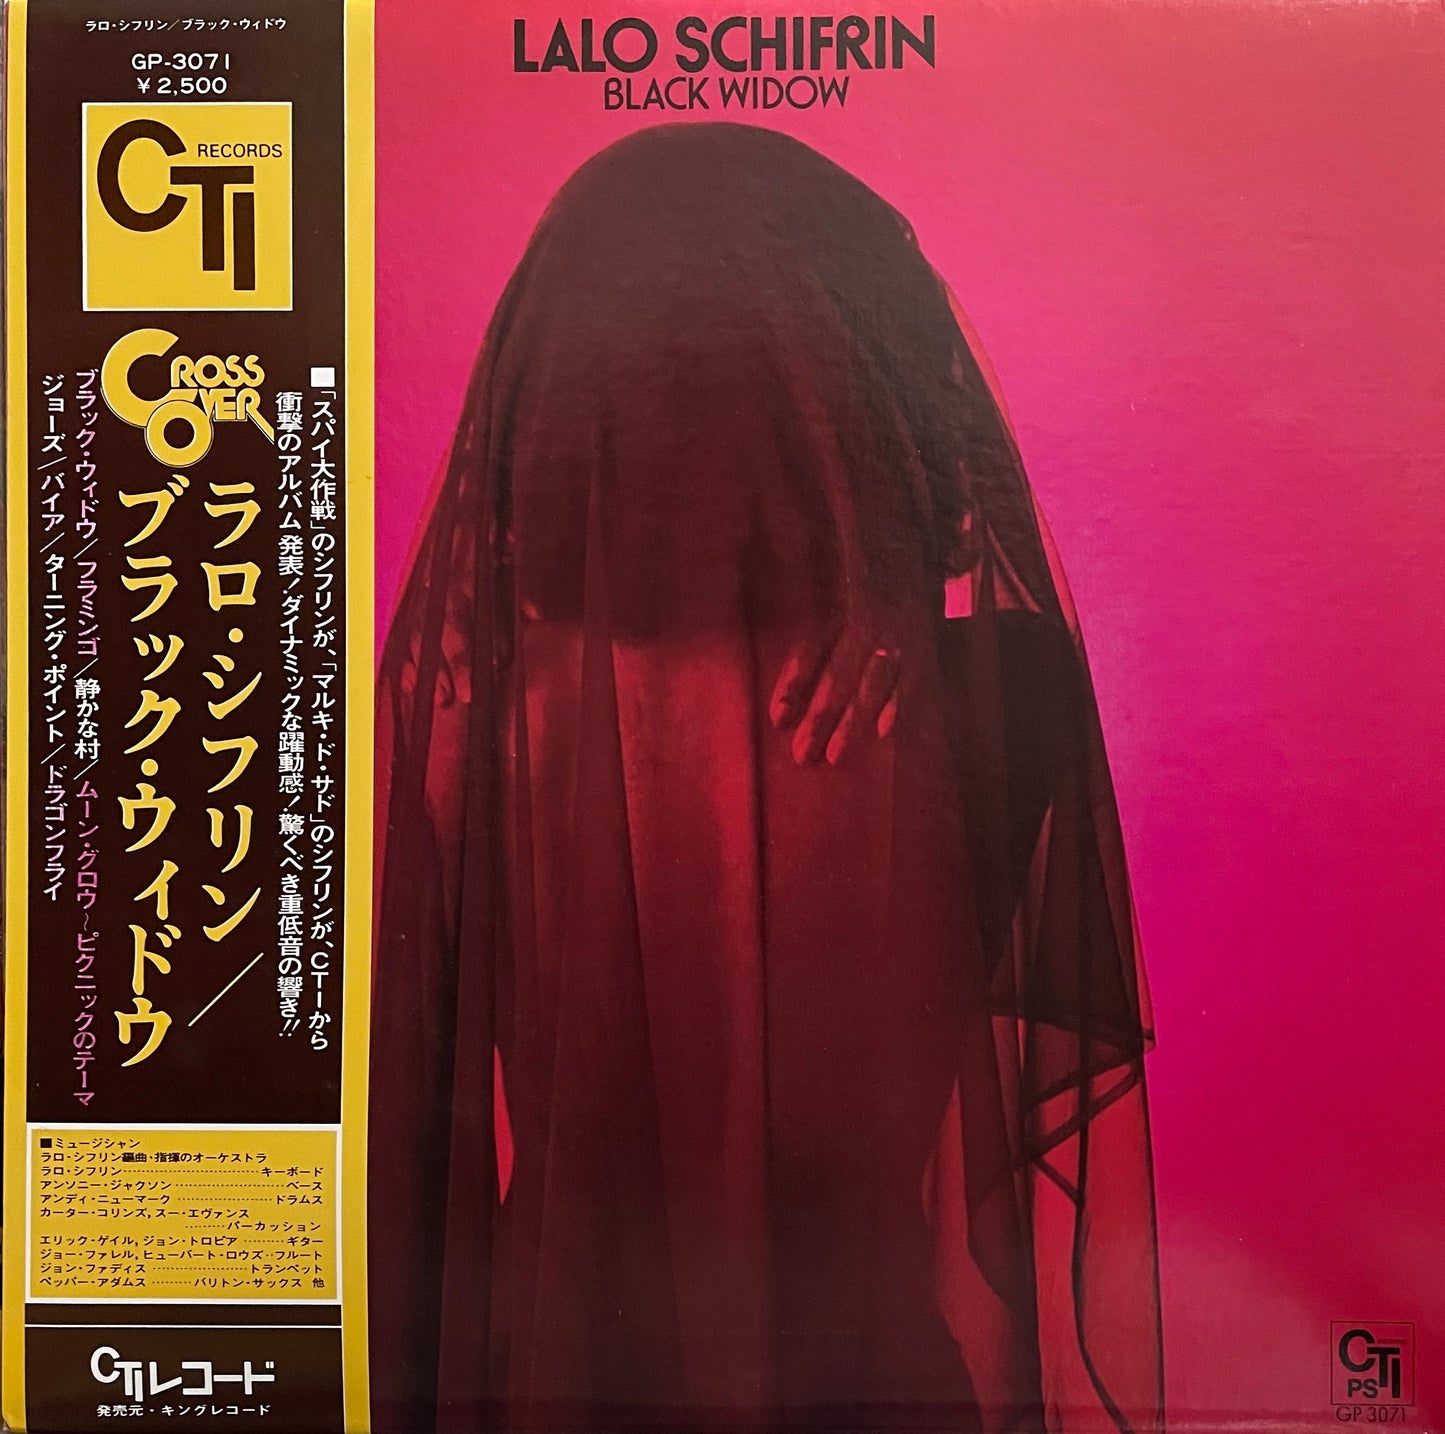 Lalo Schifrin "Black Widow" (1978)